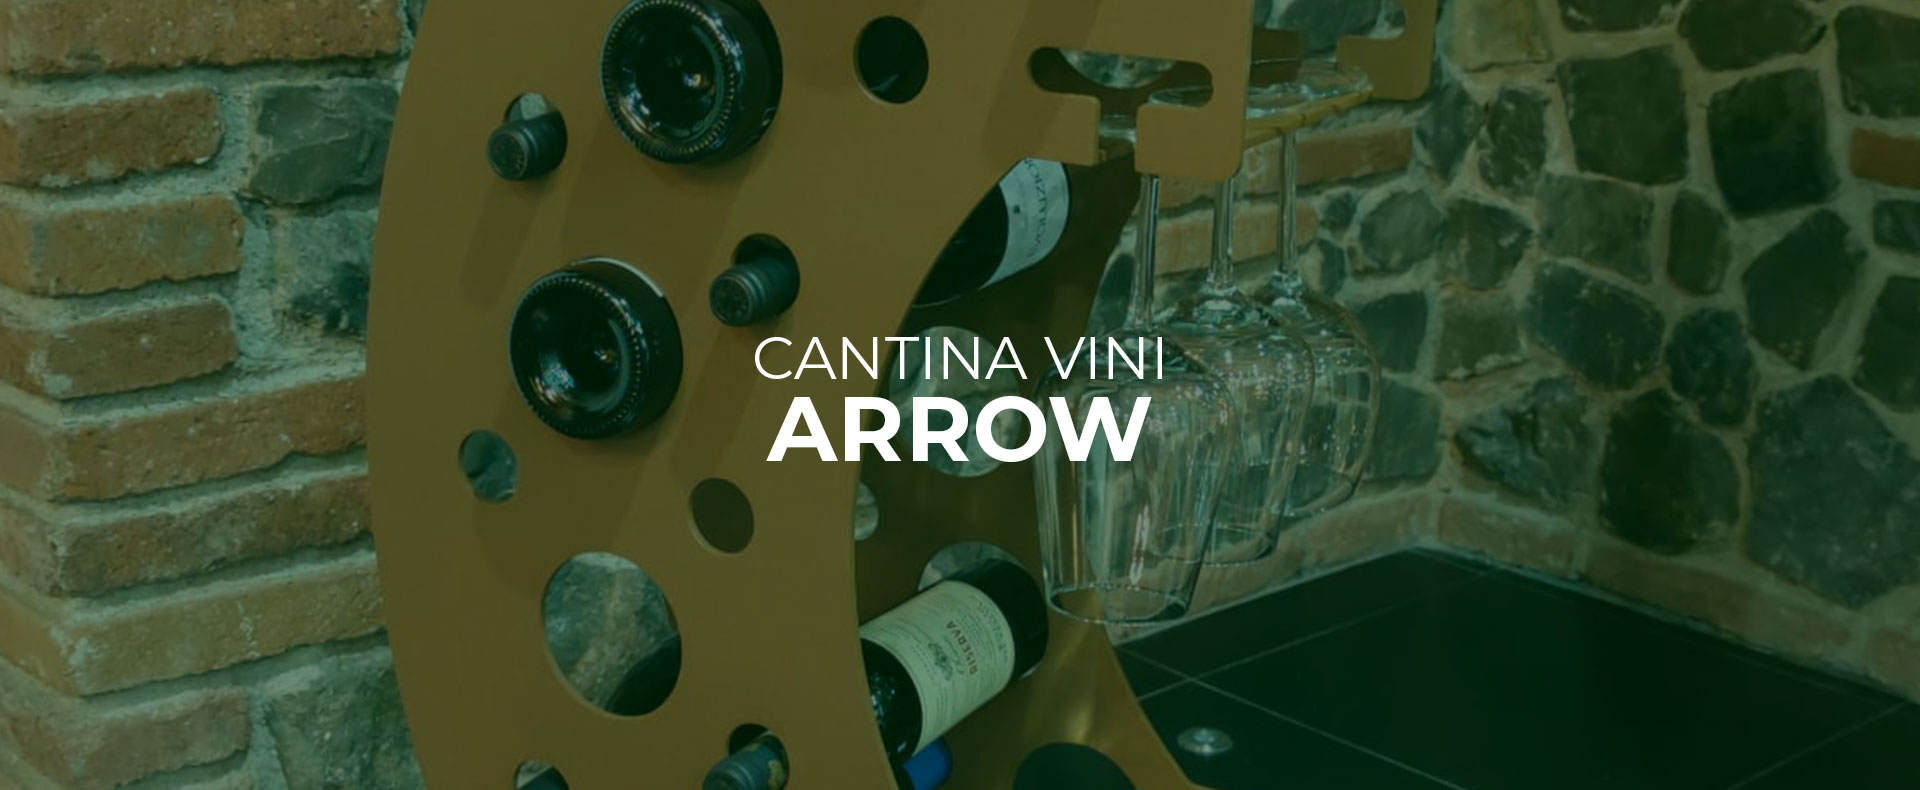 cantinetta-vini-porta-bottiglie-vini-industrial-style-stile-industriale-forma-personalizzabile-orsoloni-design-velletri-lariano-roma-provincia-latina